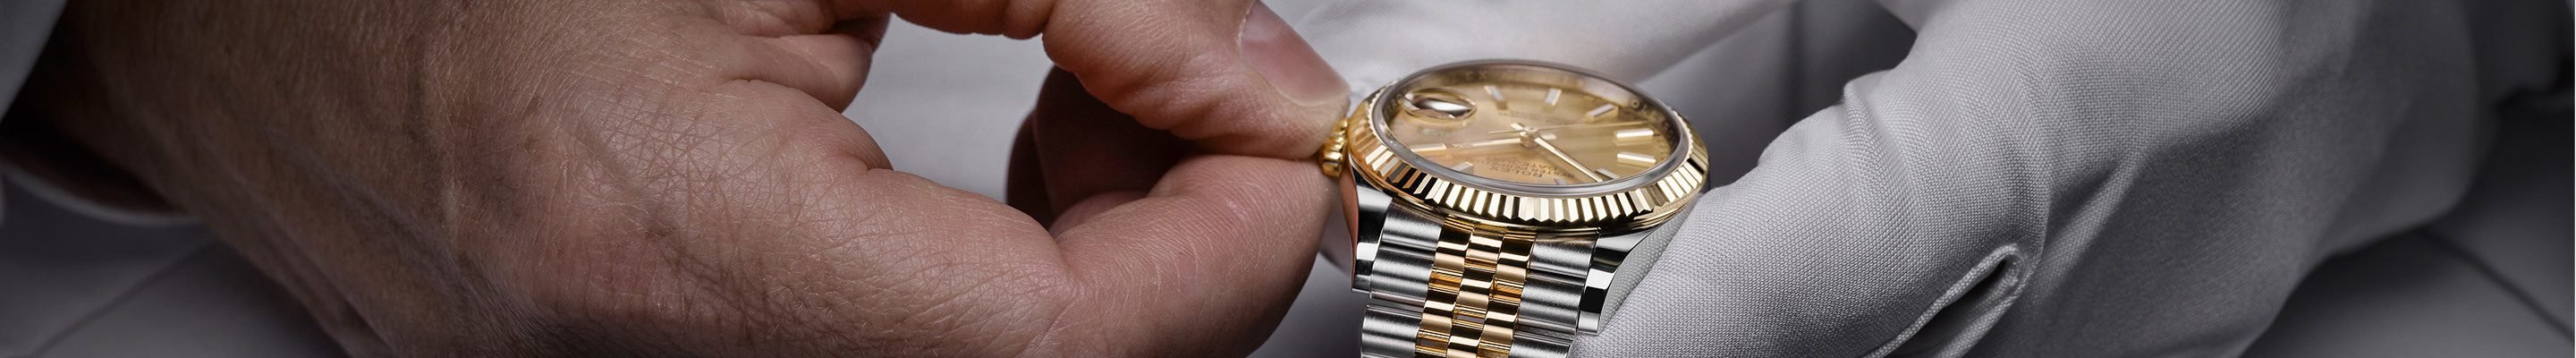 Rolex watch being serviced